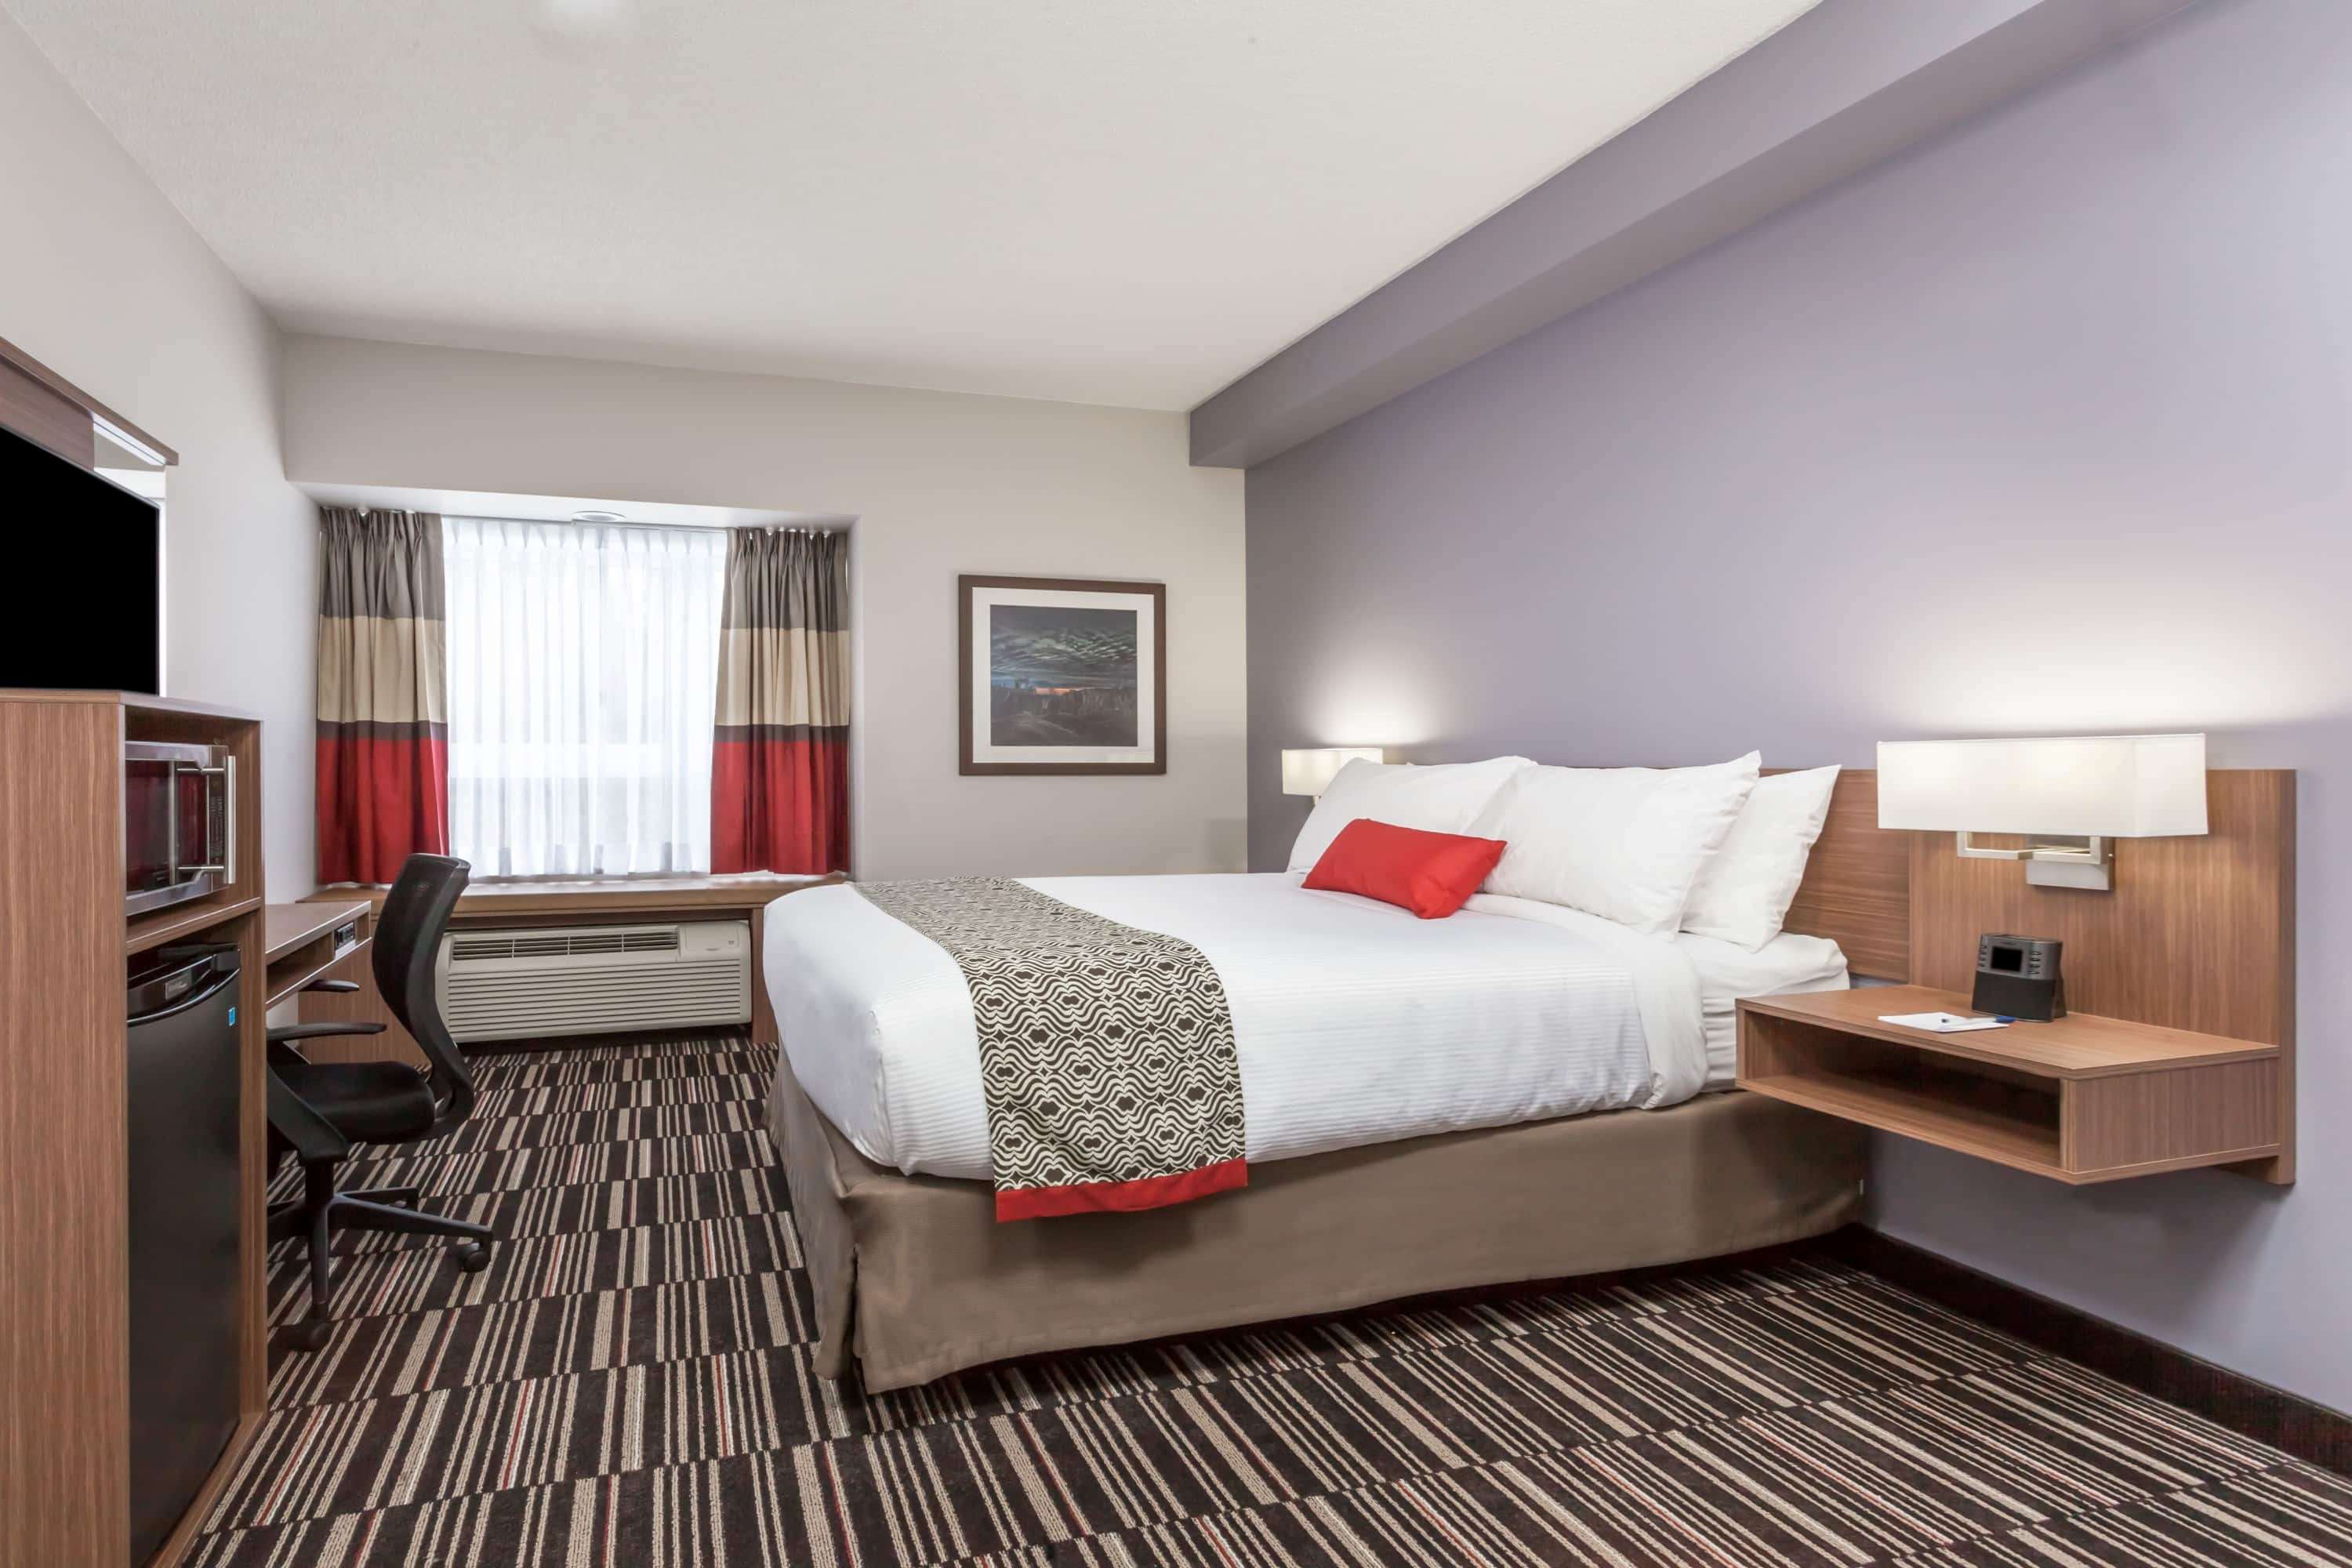 Microtel Inn & Suites by Wyndham Kirkland Lake